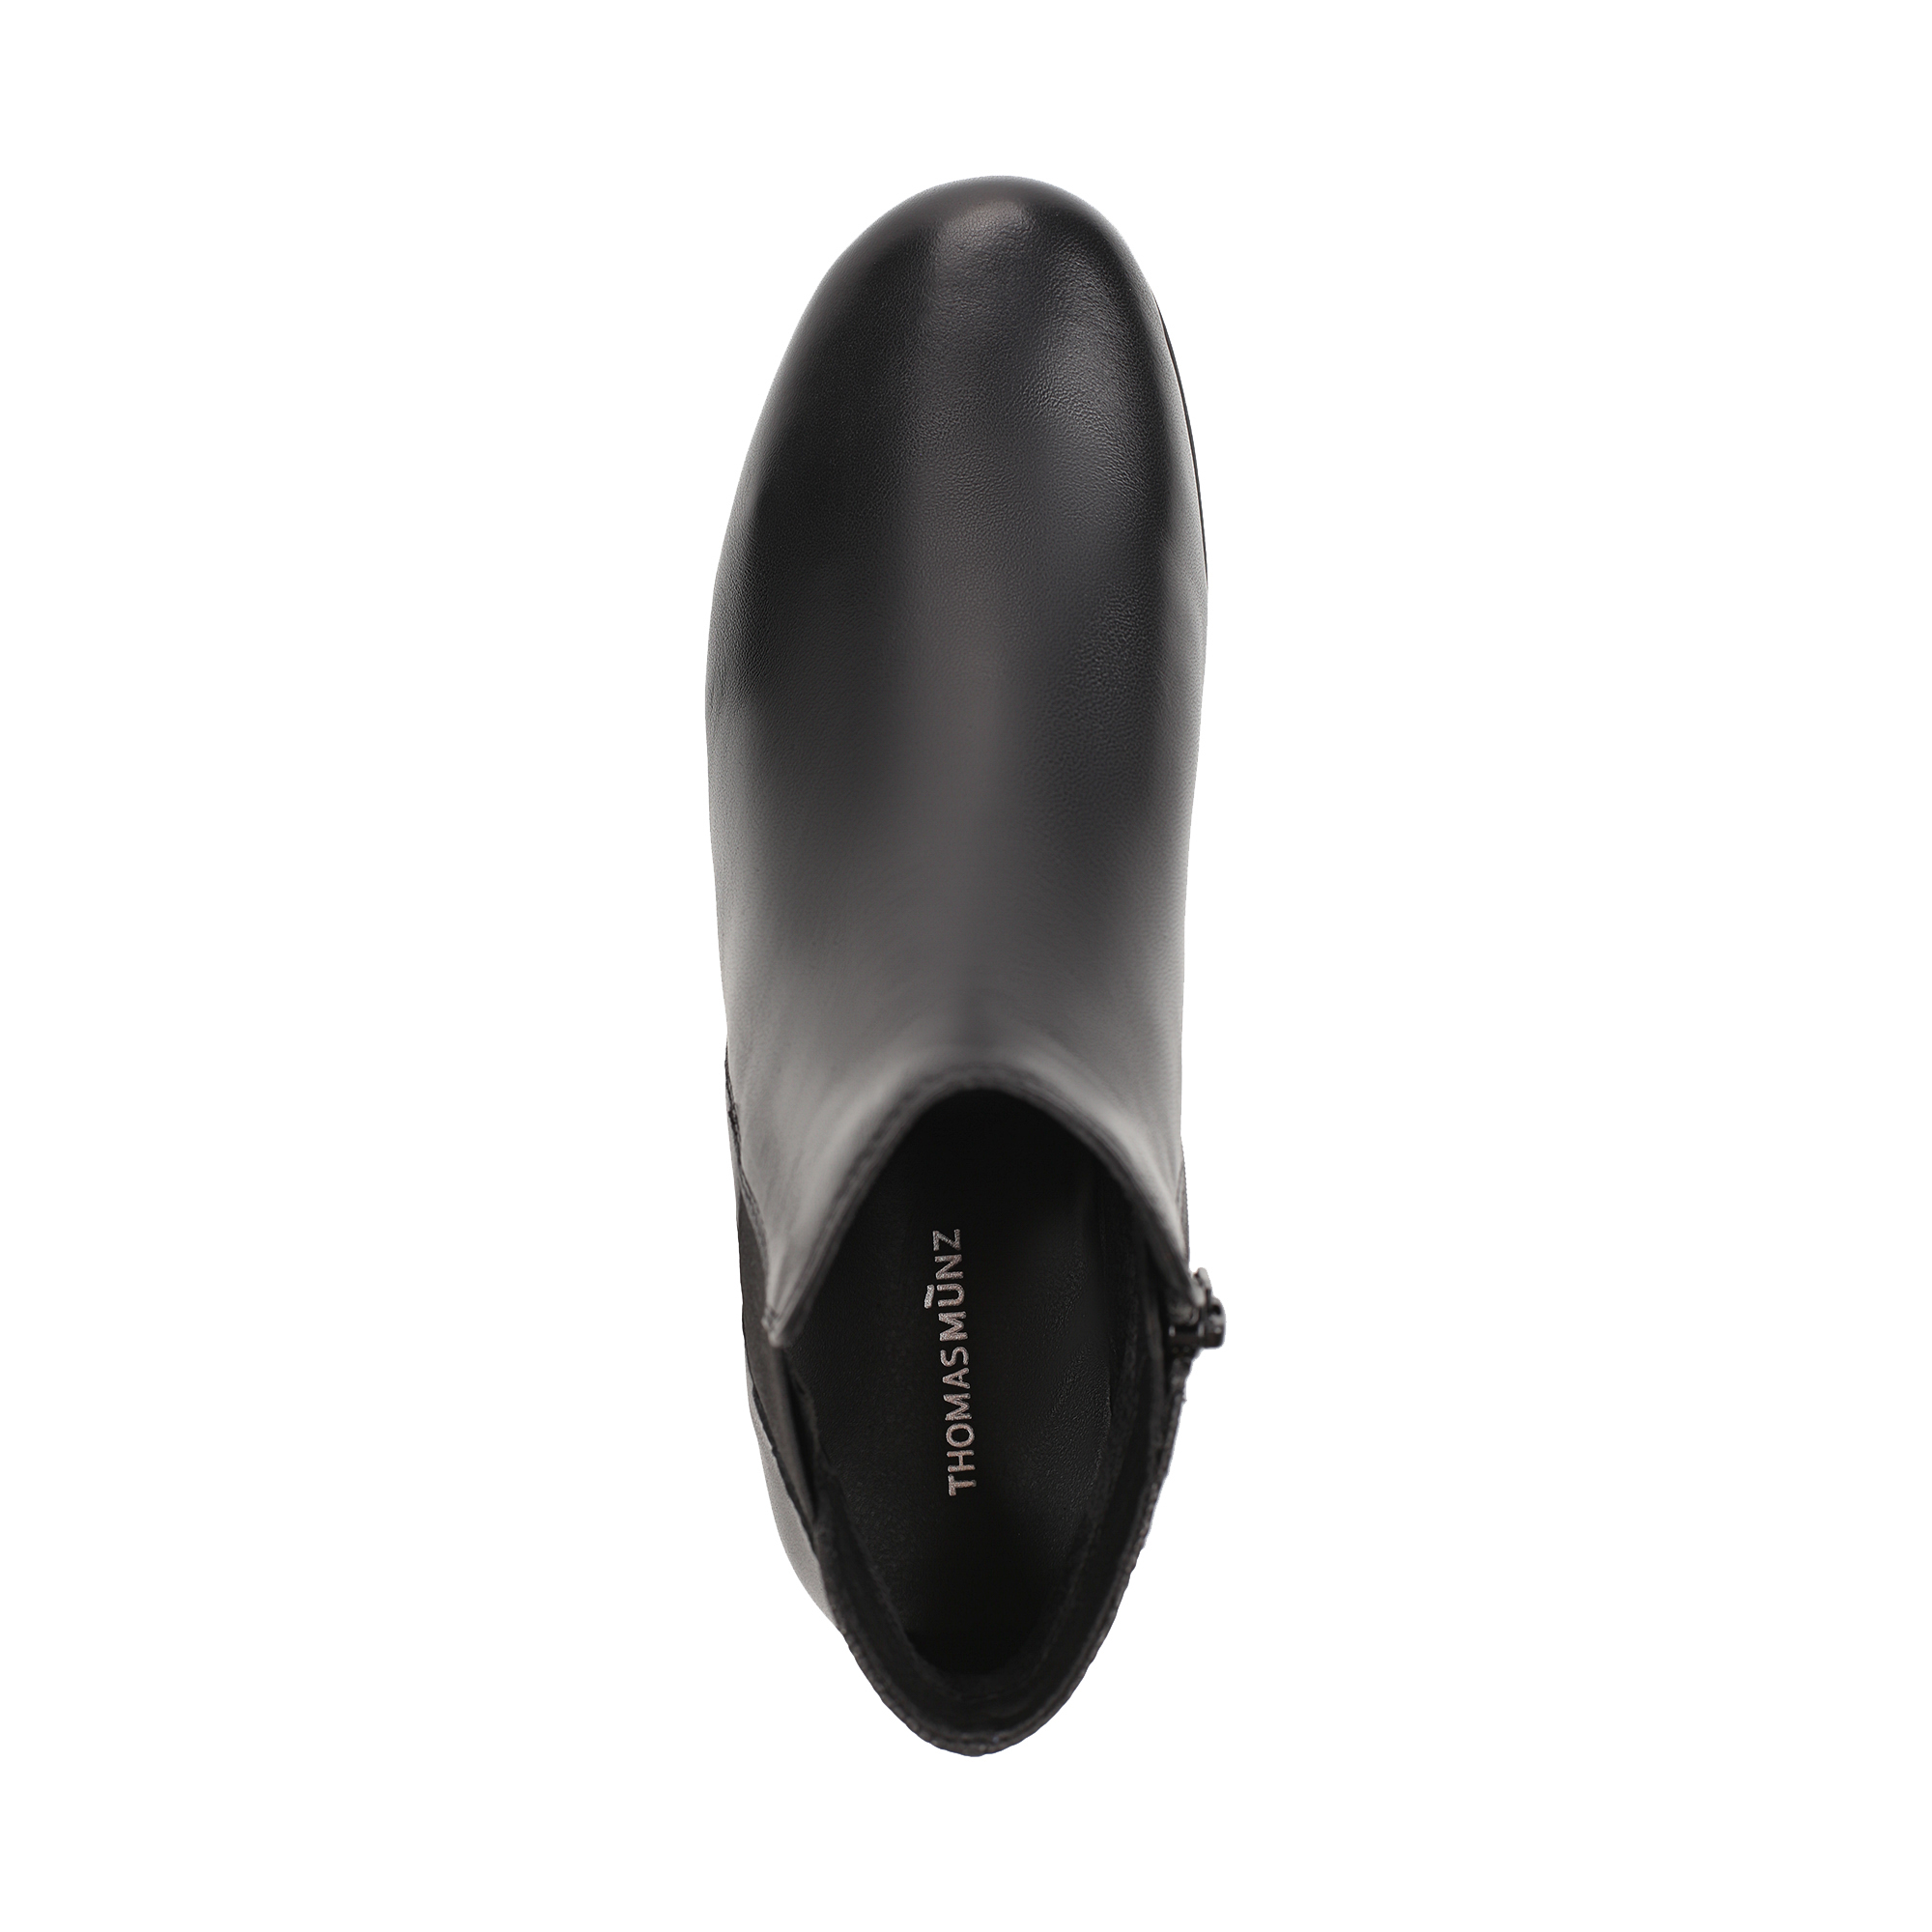 Ботинки Thomas Munz 569-194A-2102, цвет черный, размер 35 - фото 5